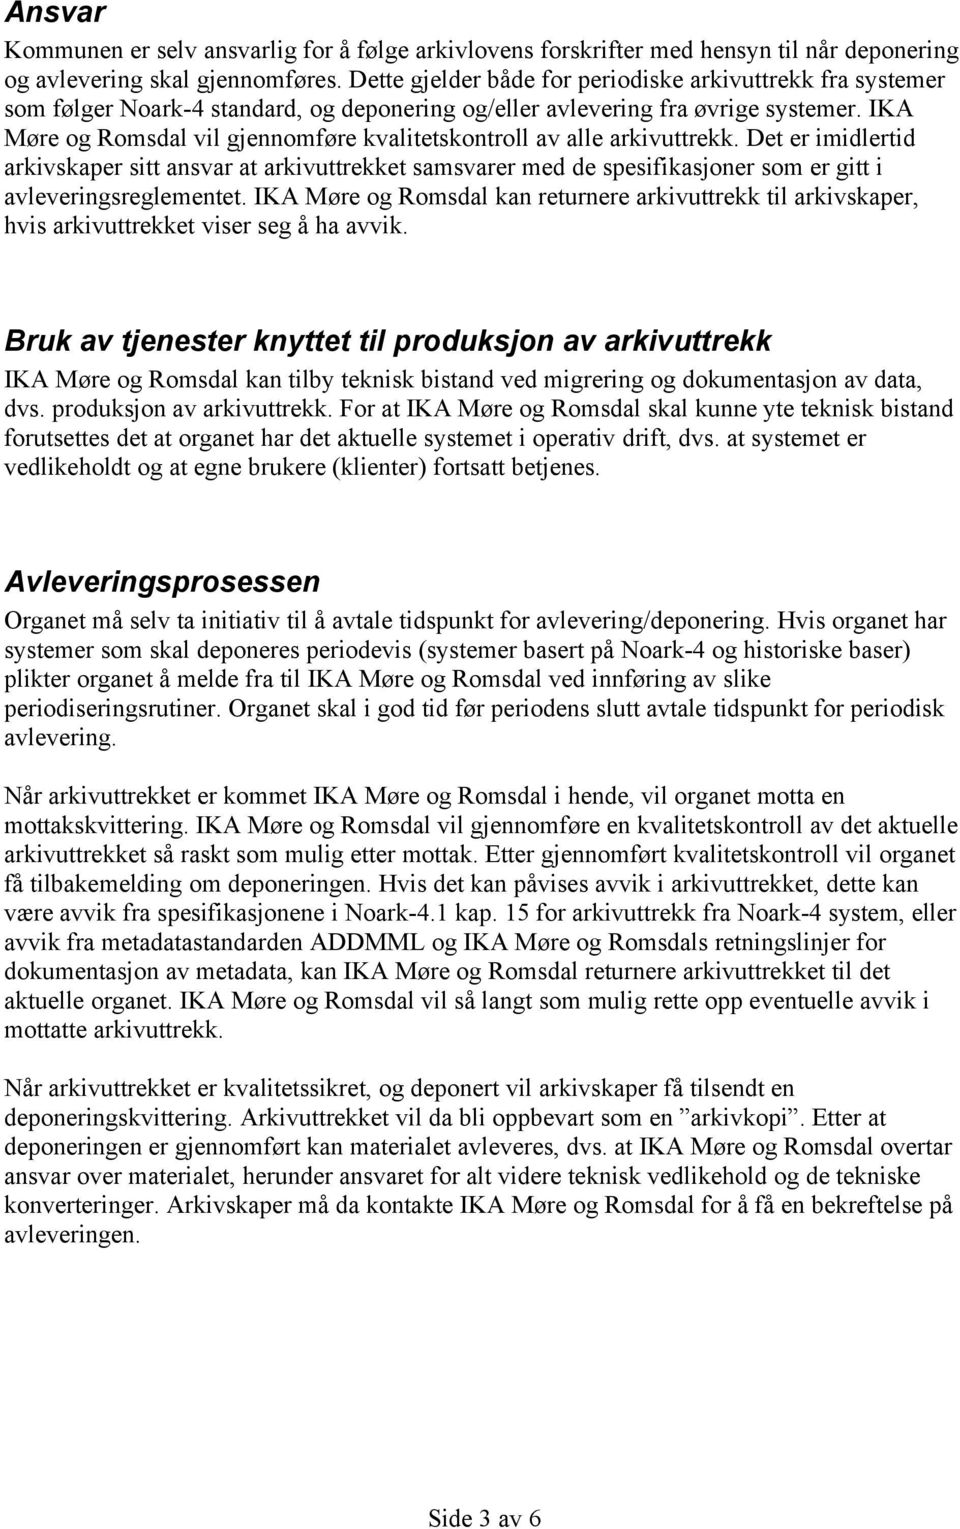 IKA Møre og Romsdal vil gjennomføre kvalitetskontroll av alle arkivuttrekk.